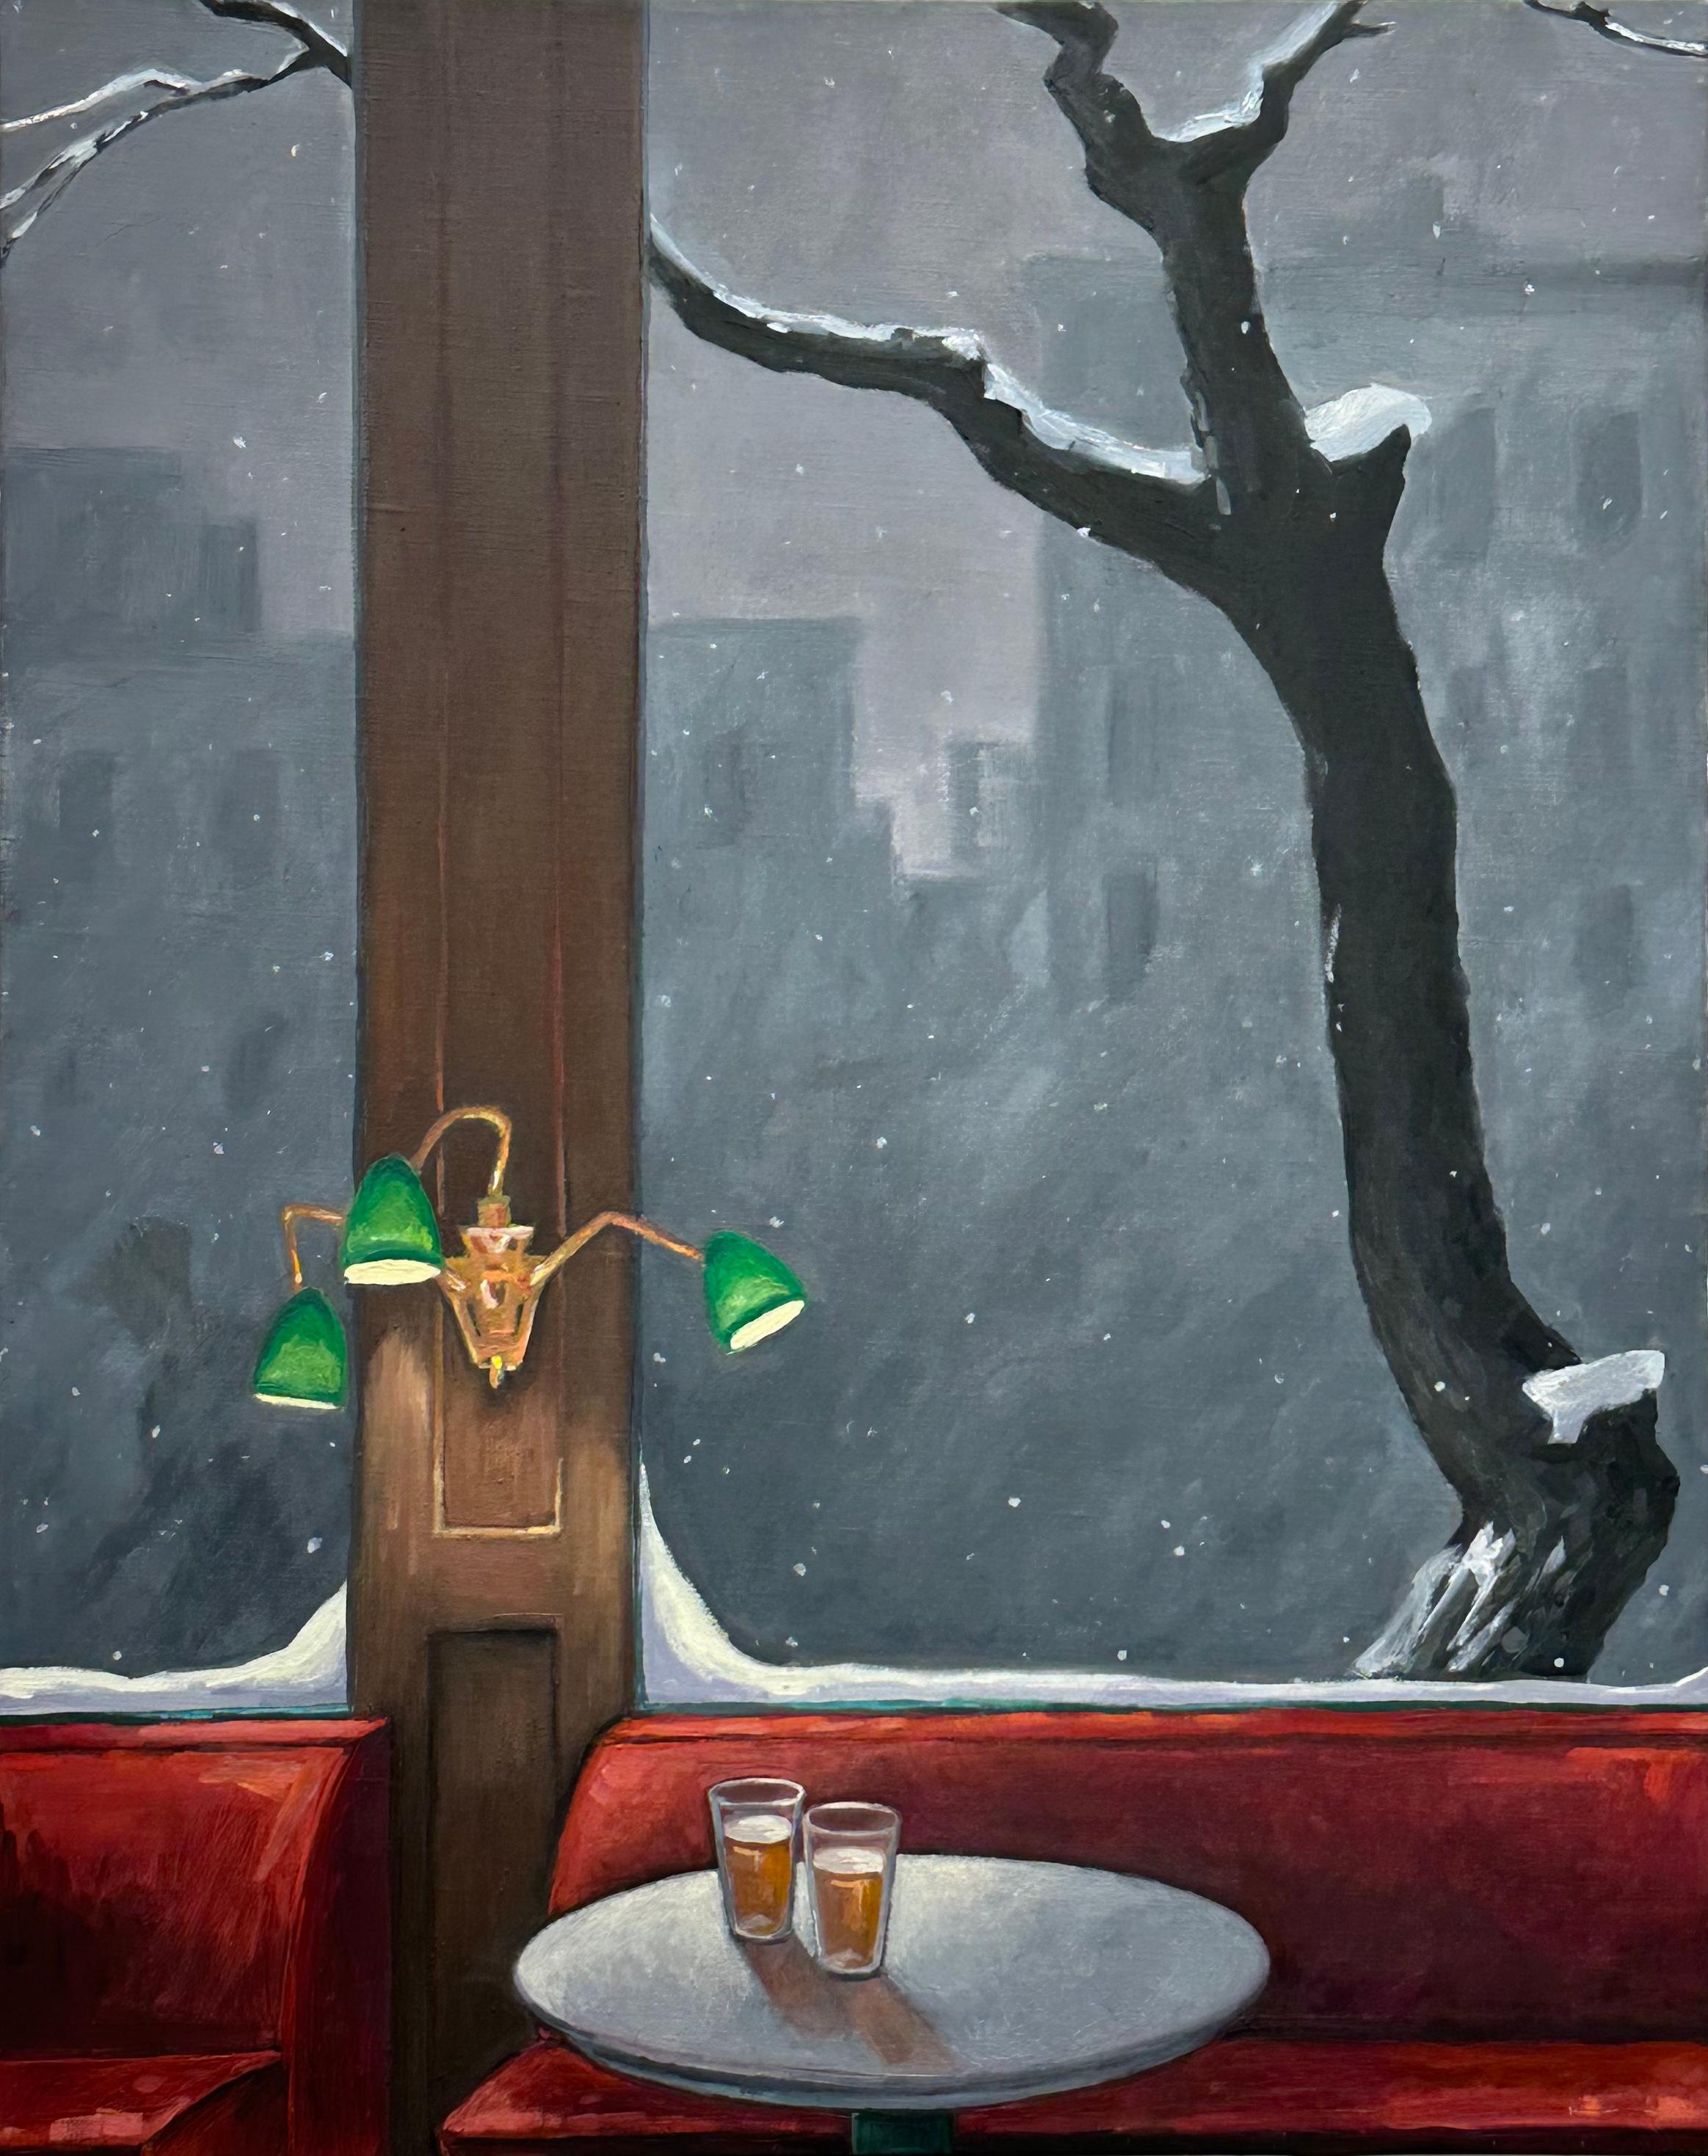 Deux bières, lampes vertes, rouge foncé, verres, neige à l'extérieur, nature morte de bar en hiver